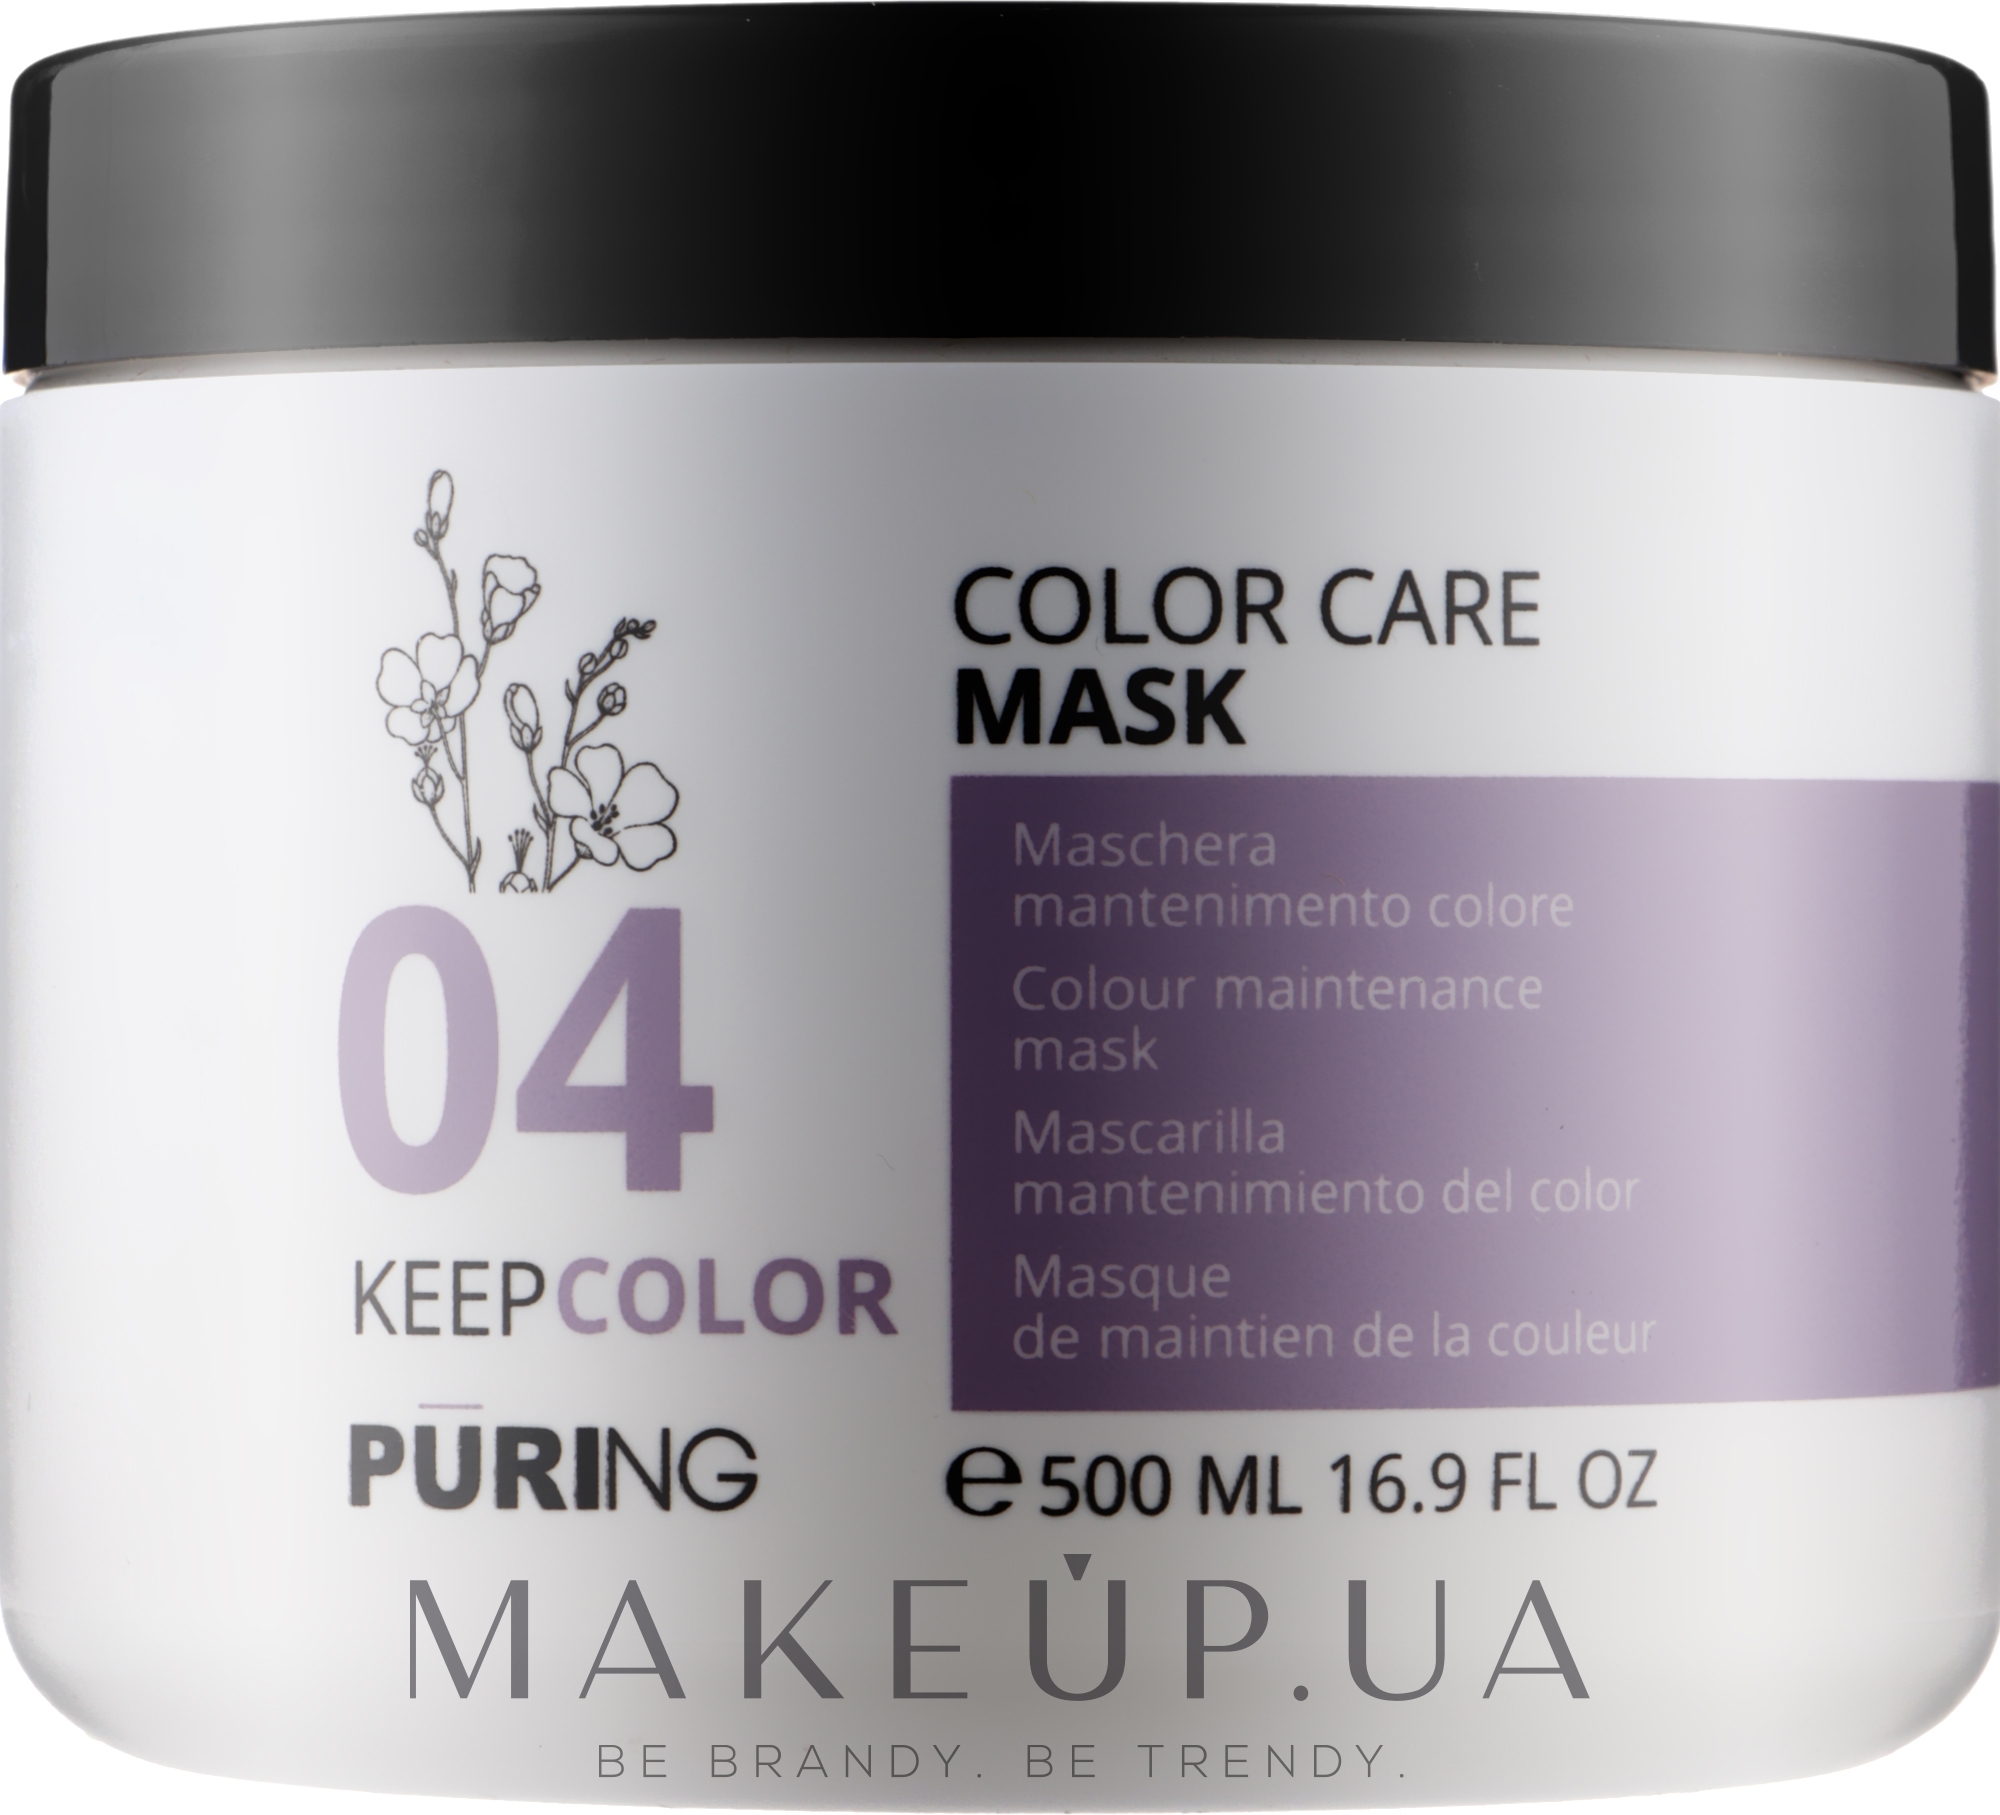 Маска для підтримування кольору фарбованого волосся - Puring 04 Keepcolor Color Care Mask — фото 500ml